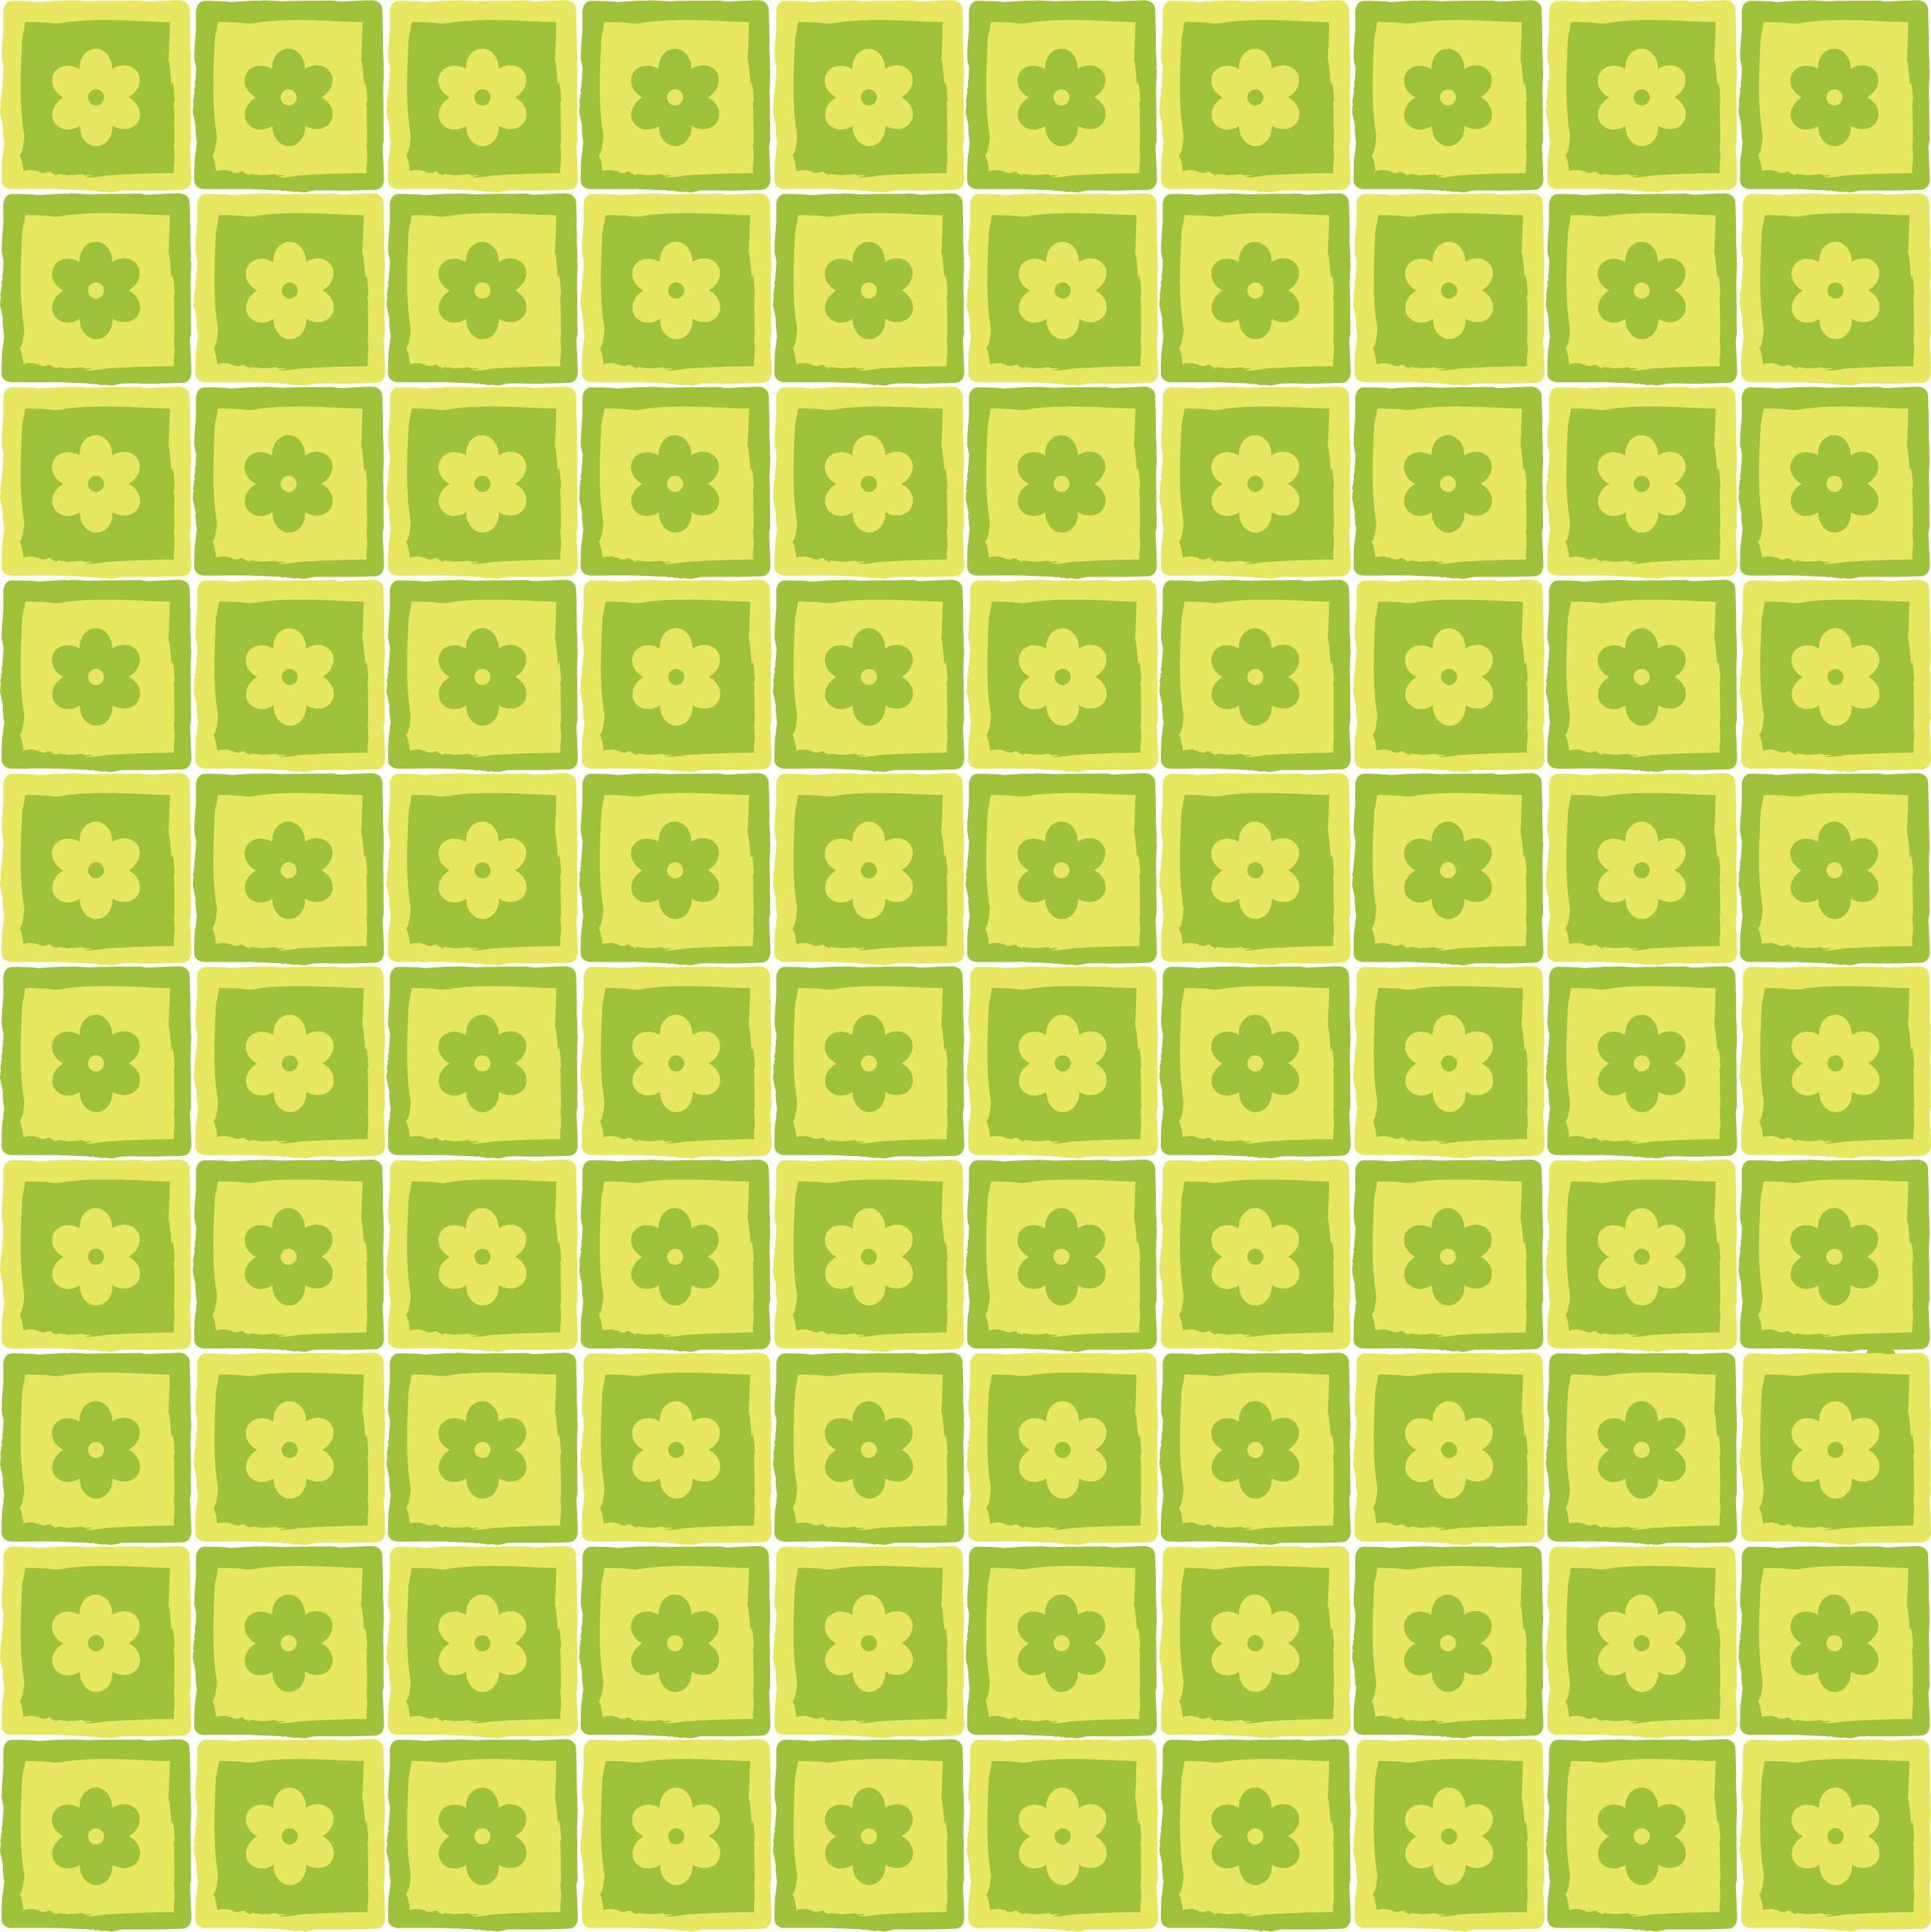 壁紙 背景イラスト 花の模様 柄 パターン No 085 黄緑 四角枠